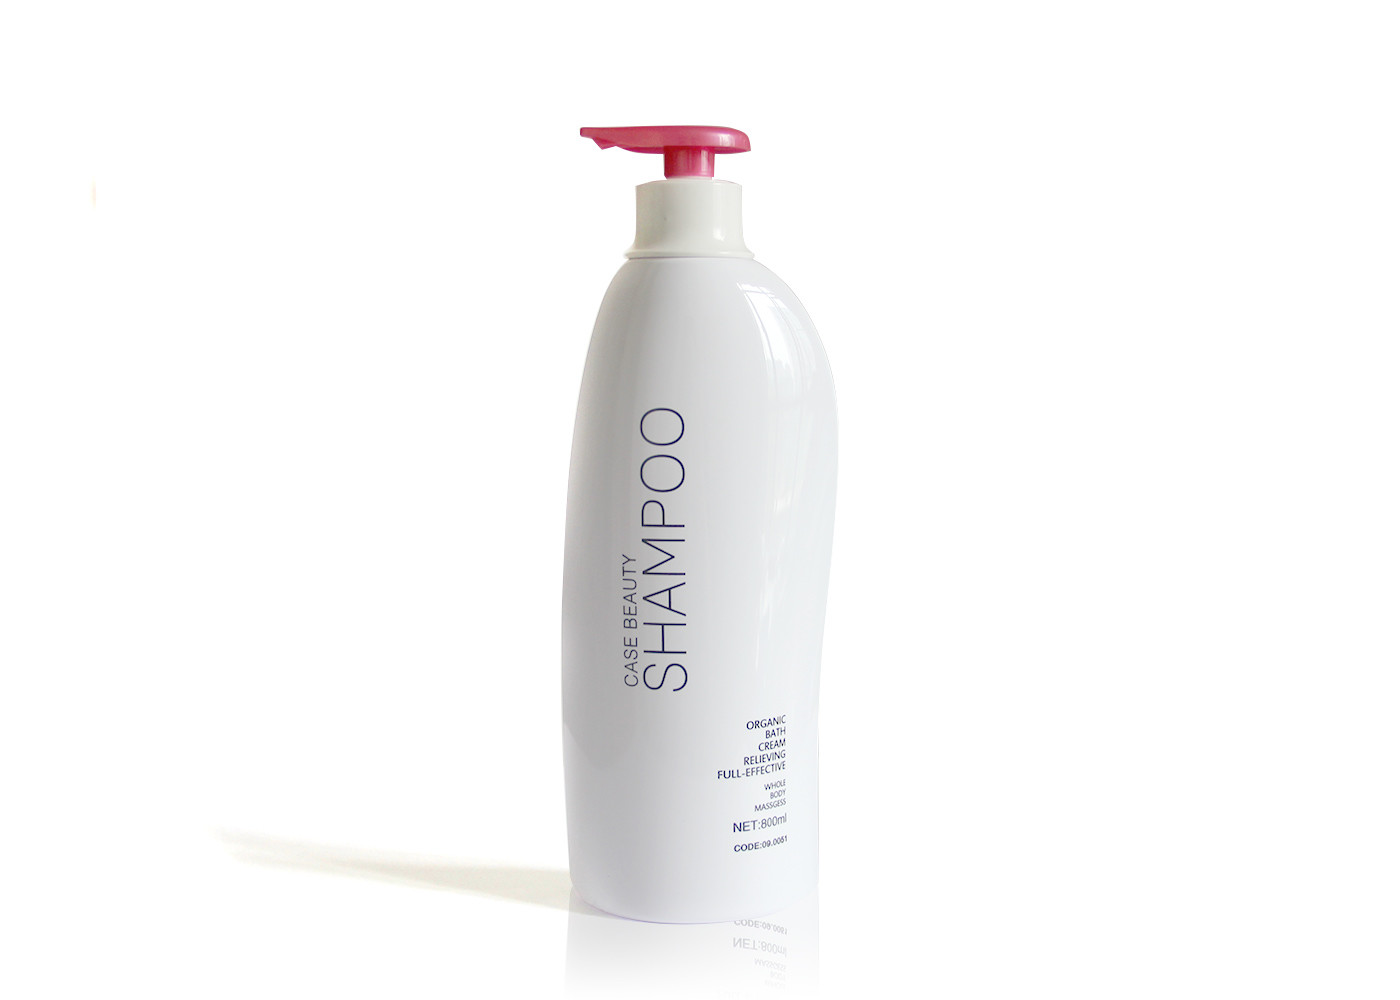  800ml Amazing Empty Plastic Shampoo Bottles Streamlined Shape Design Manufactures